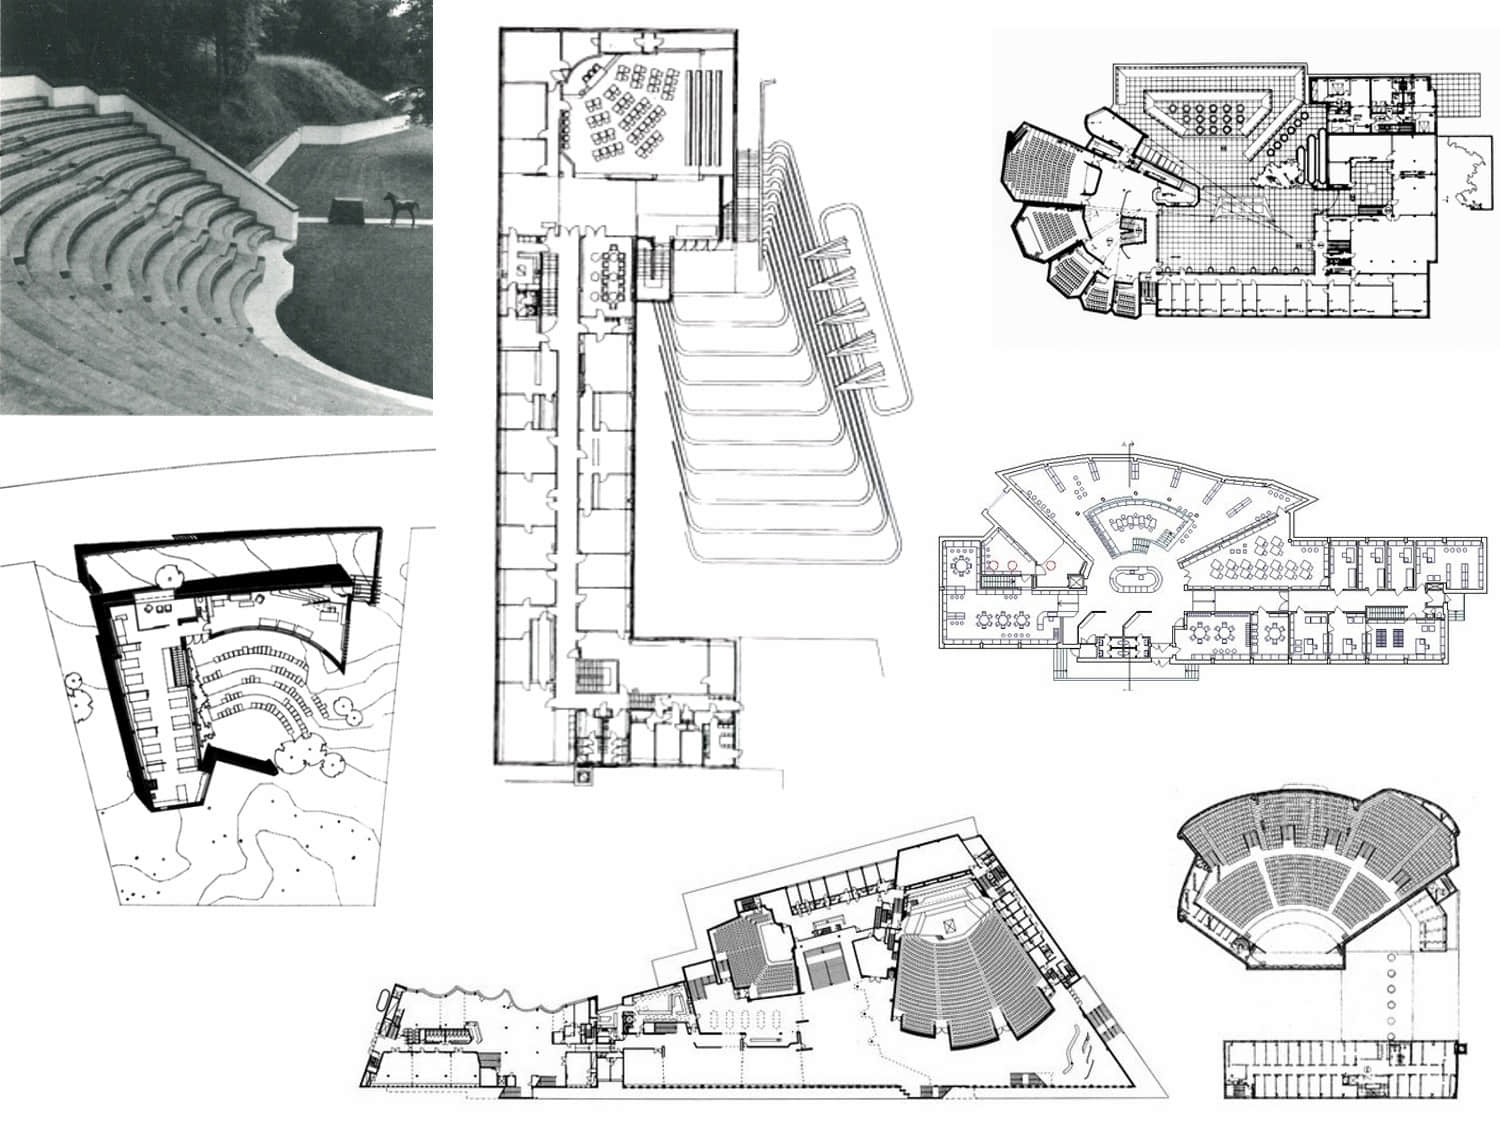 △ 对希腊“圆形剧场”的热爱，促成了阿尔托在建筑平面上的一大创举：在方整均质的矩阵平面中，嵌入扇形放射状平面，成为人们聚集的中心场所。